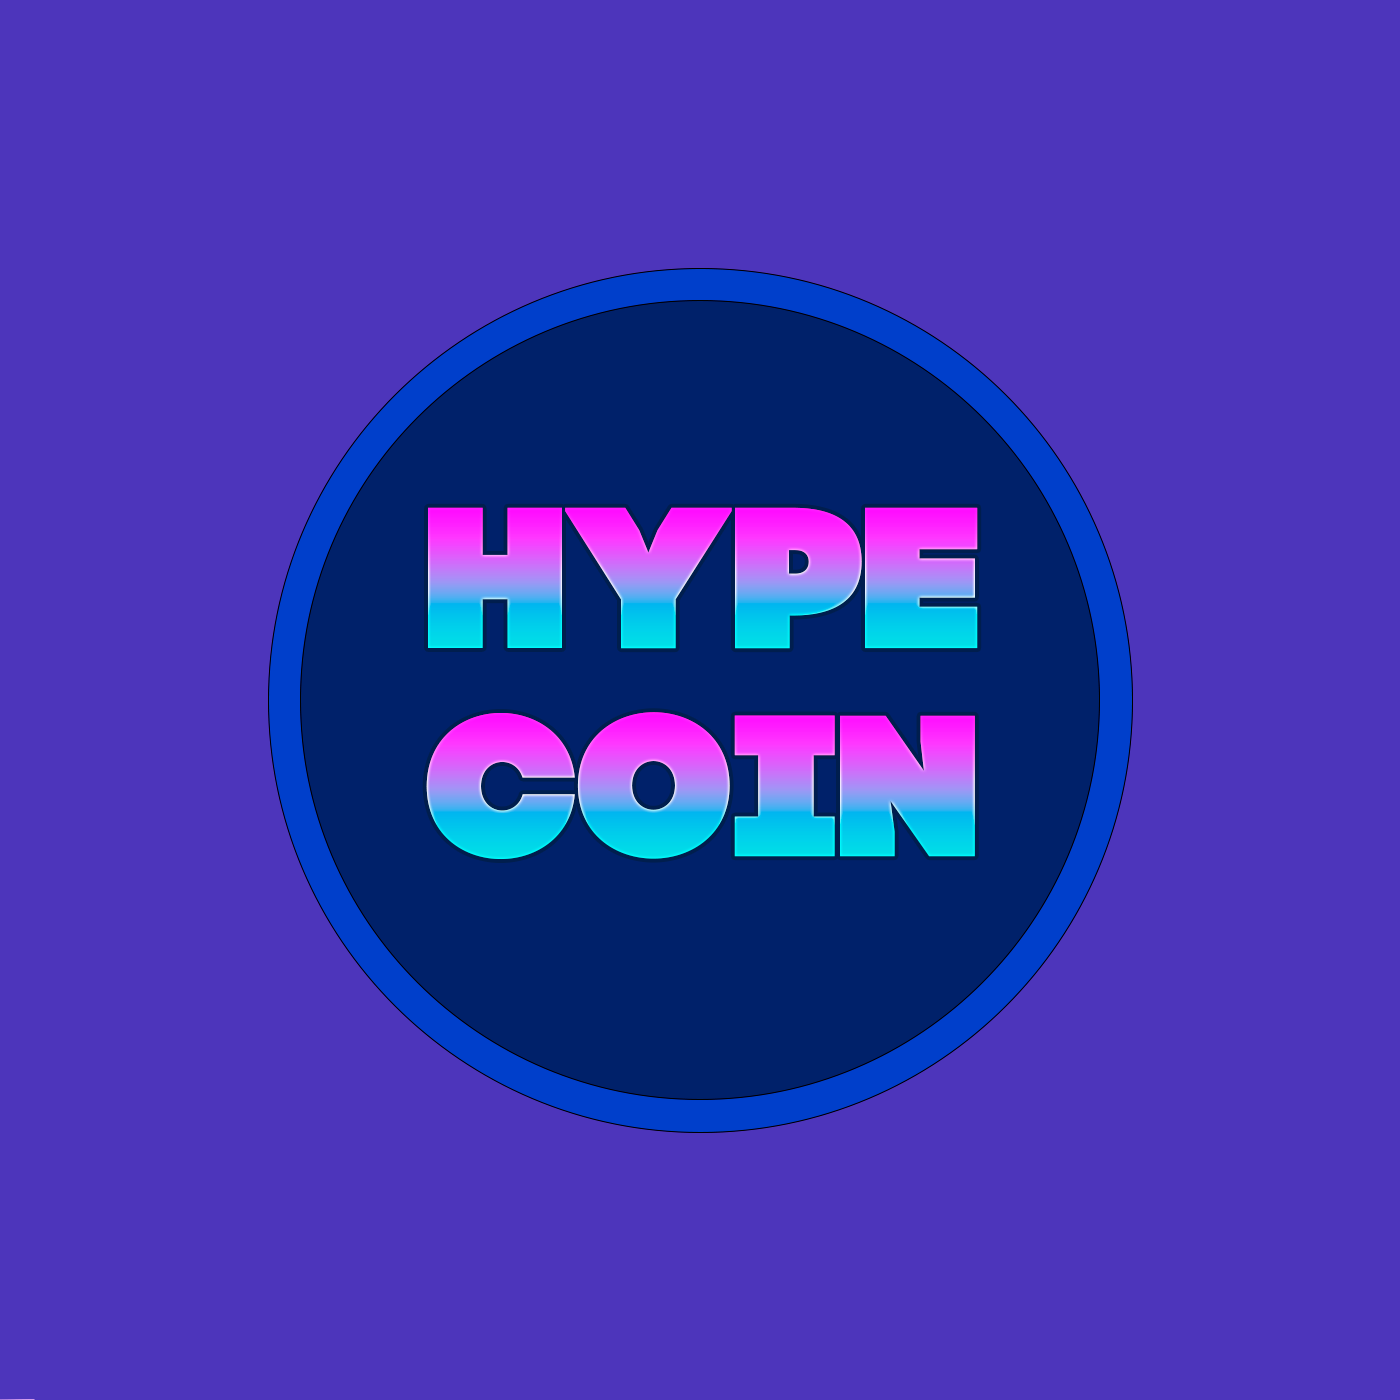 Hype coin